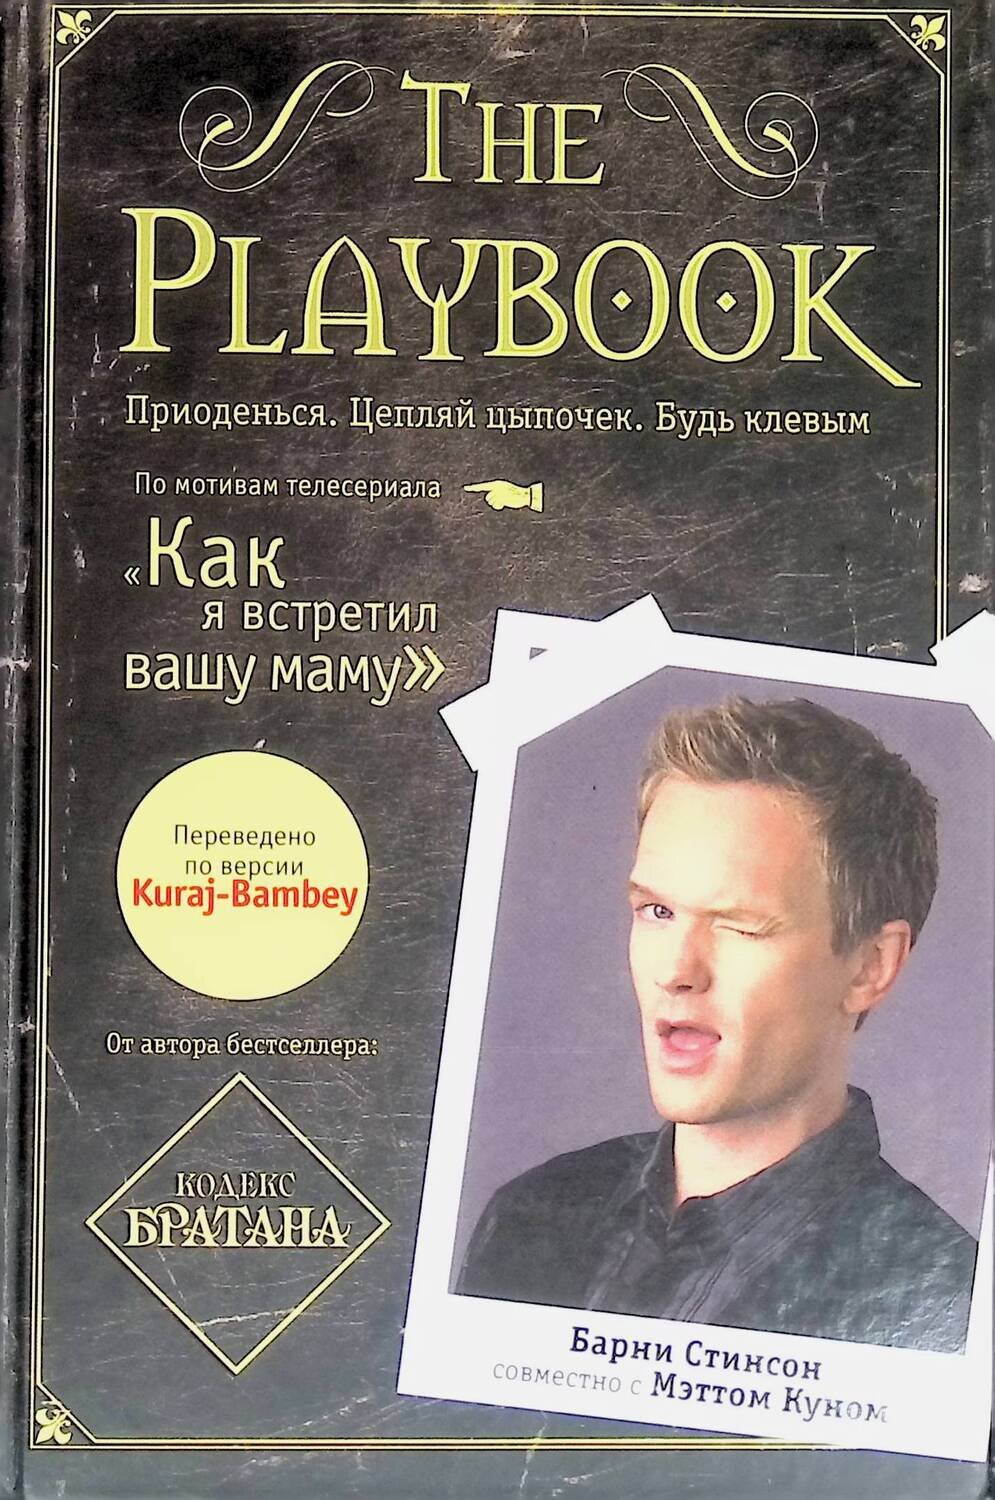 The Playbook; Стинсон Б., Кун М.